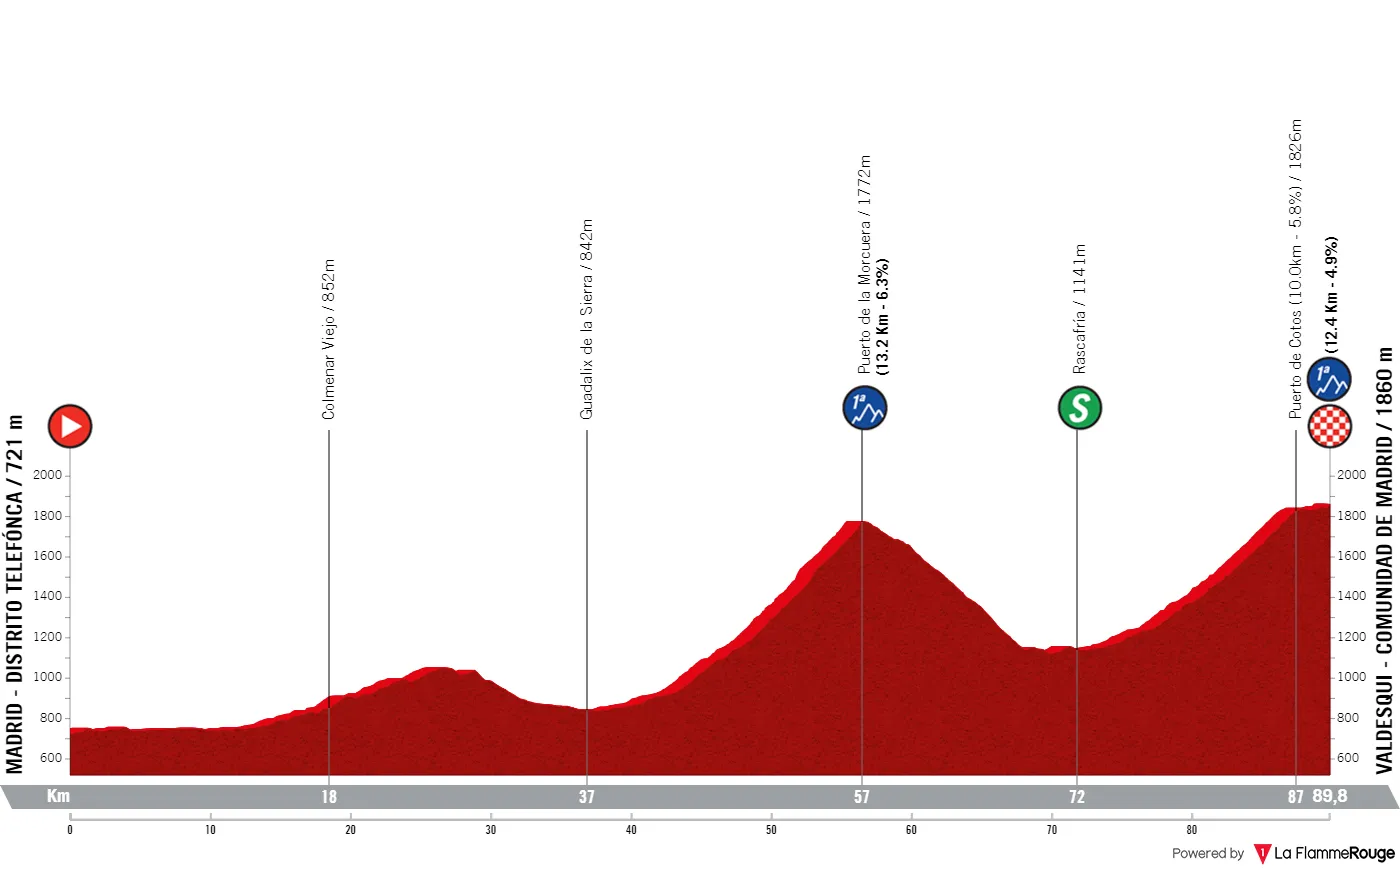 Etappe 8: Madrid - Valdesqui, 89,8 Kilometer schematisches Profil&amp;amp;lt;br&amp;amp;gt;